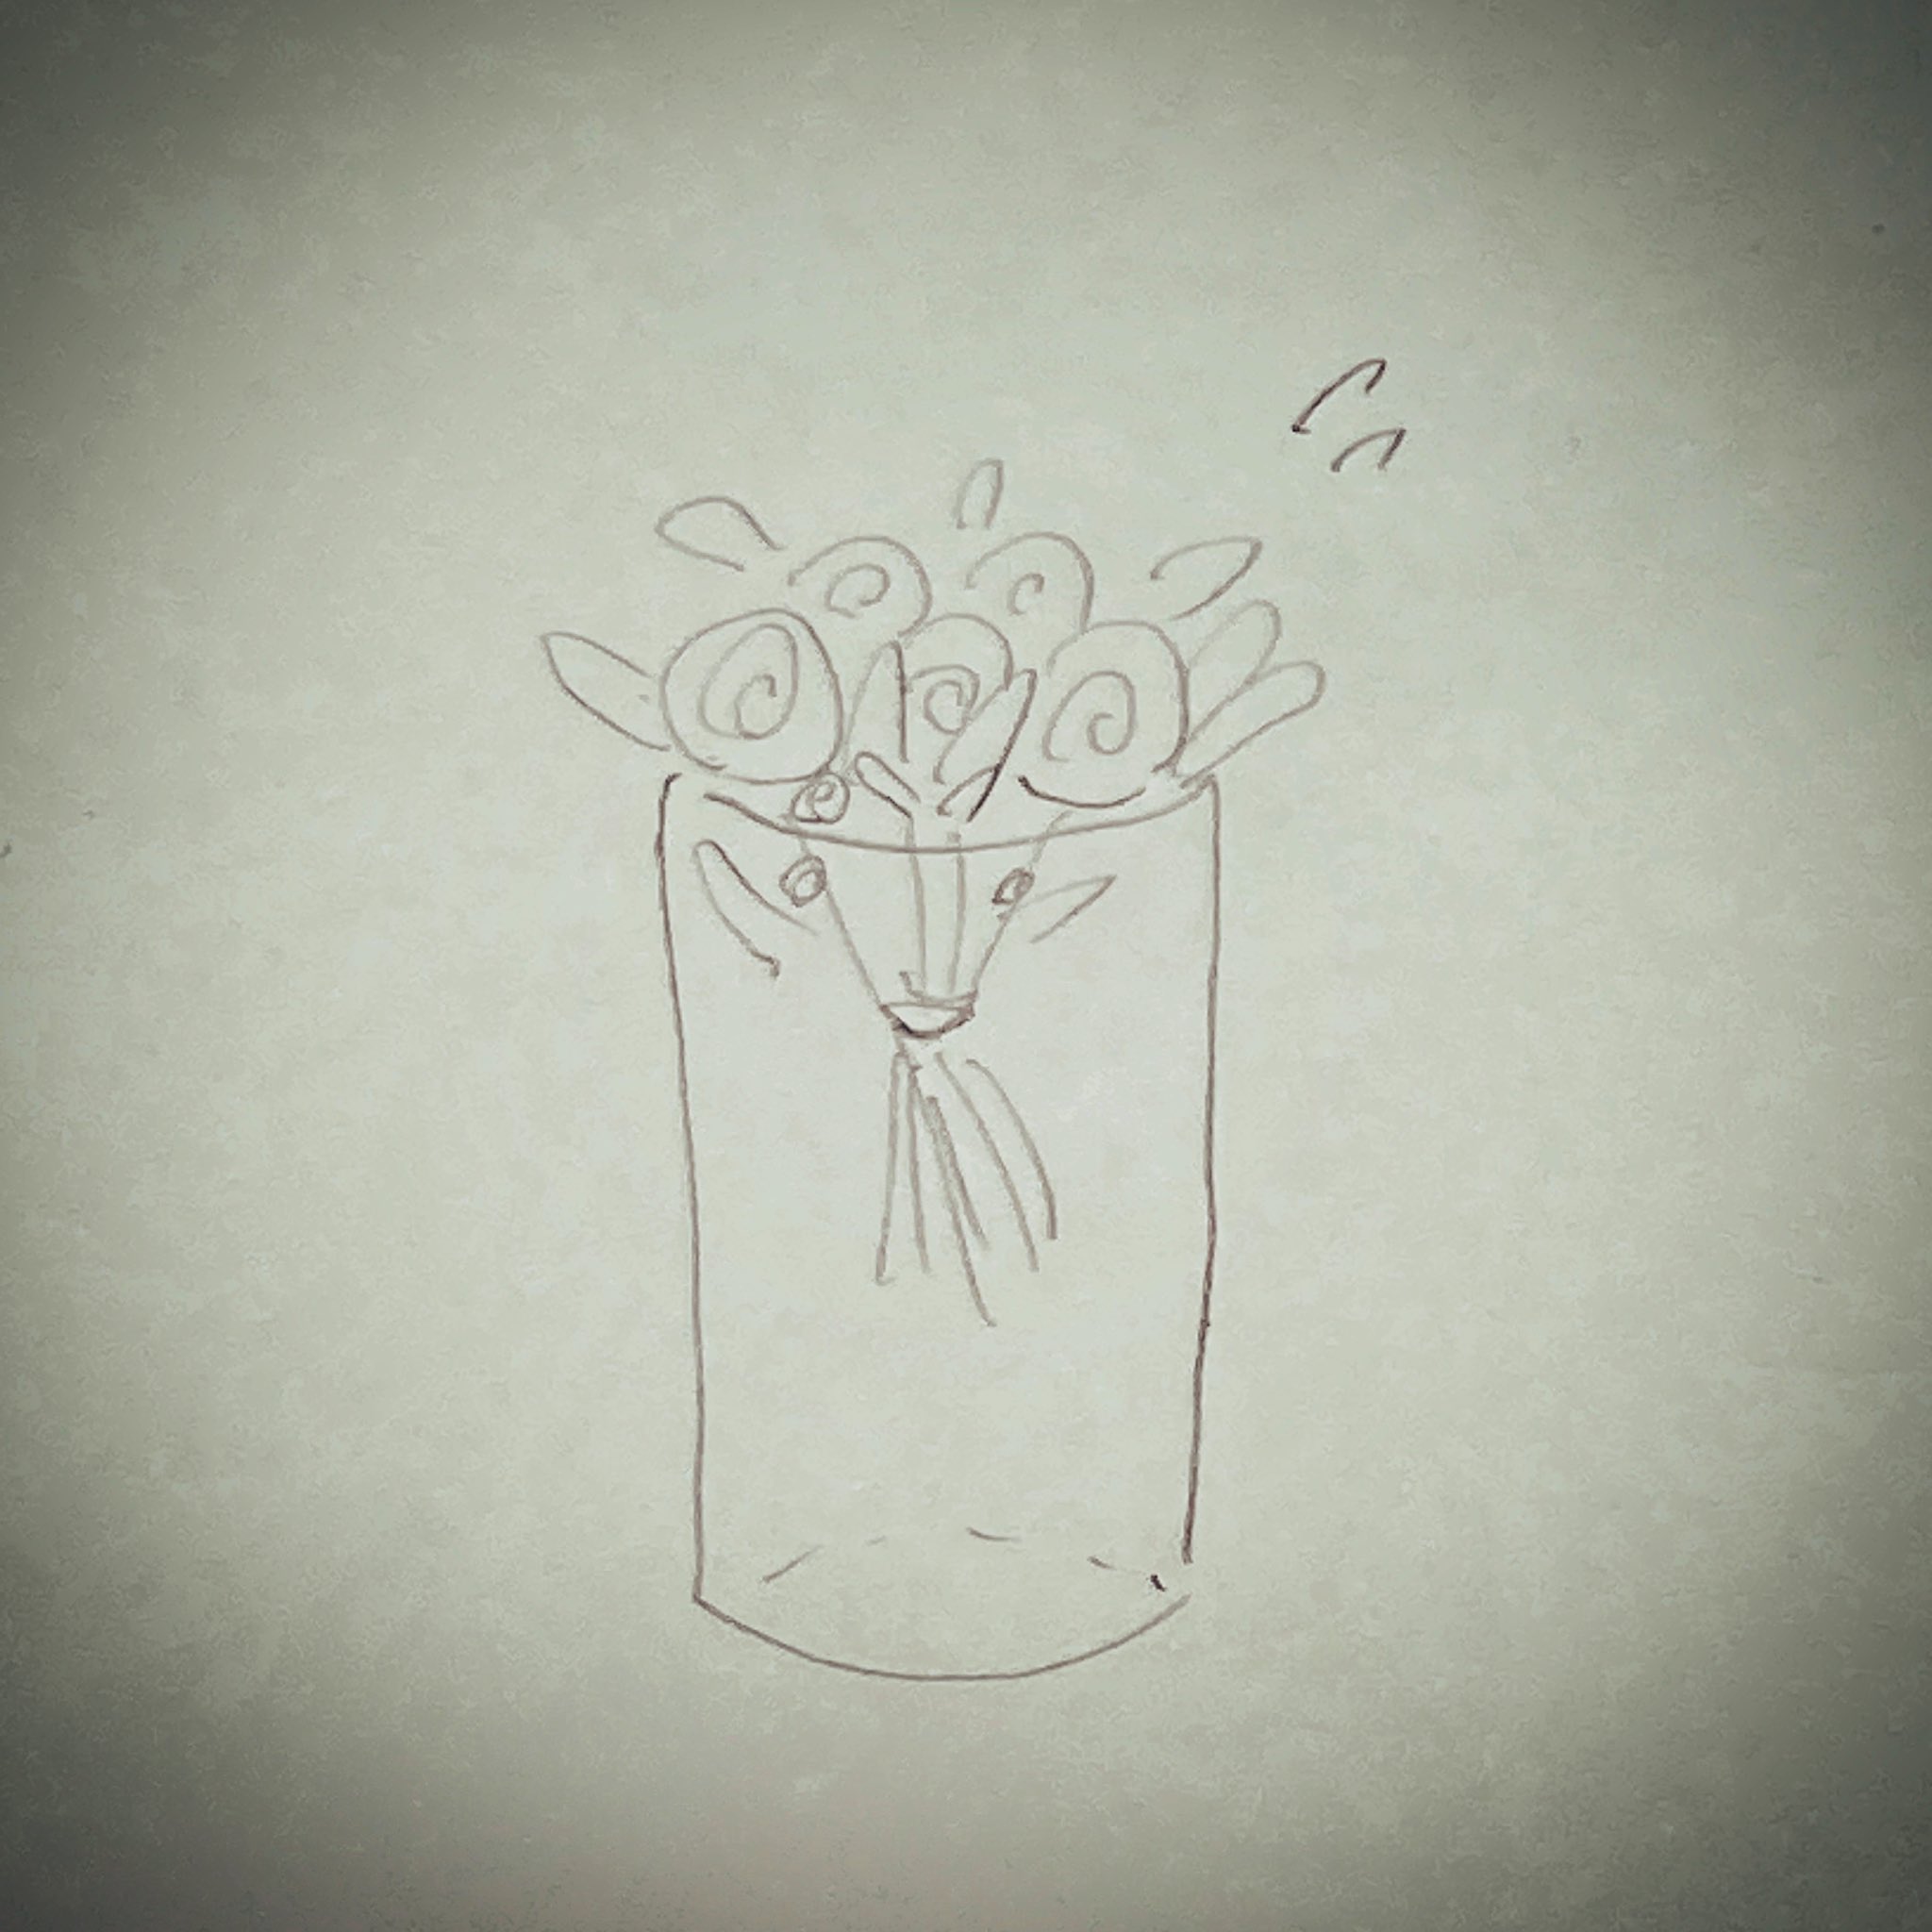 Teavril テヴリル 1 8 10 Fogbound Rt Ykn N Atelier 花束に合う大きさの花瓶が無い時 ブーケの紐などで結ばれている部分の太さに合わせ セロハンテープで図のように花瓶に貼ります 茎の下の方をギュッと持ち テープの間中央に入れます お水は茎